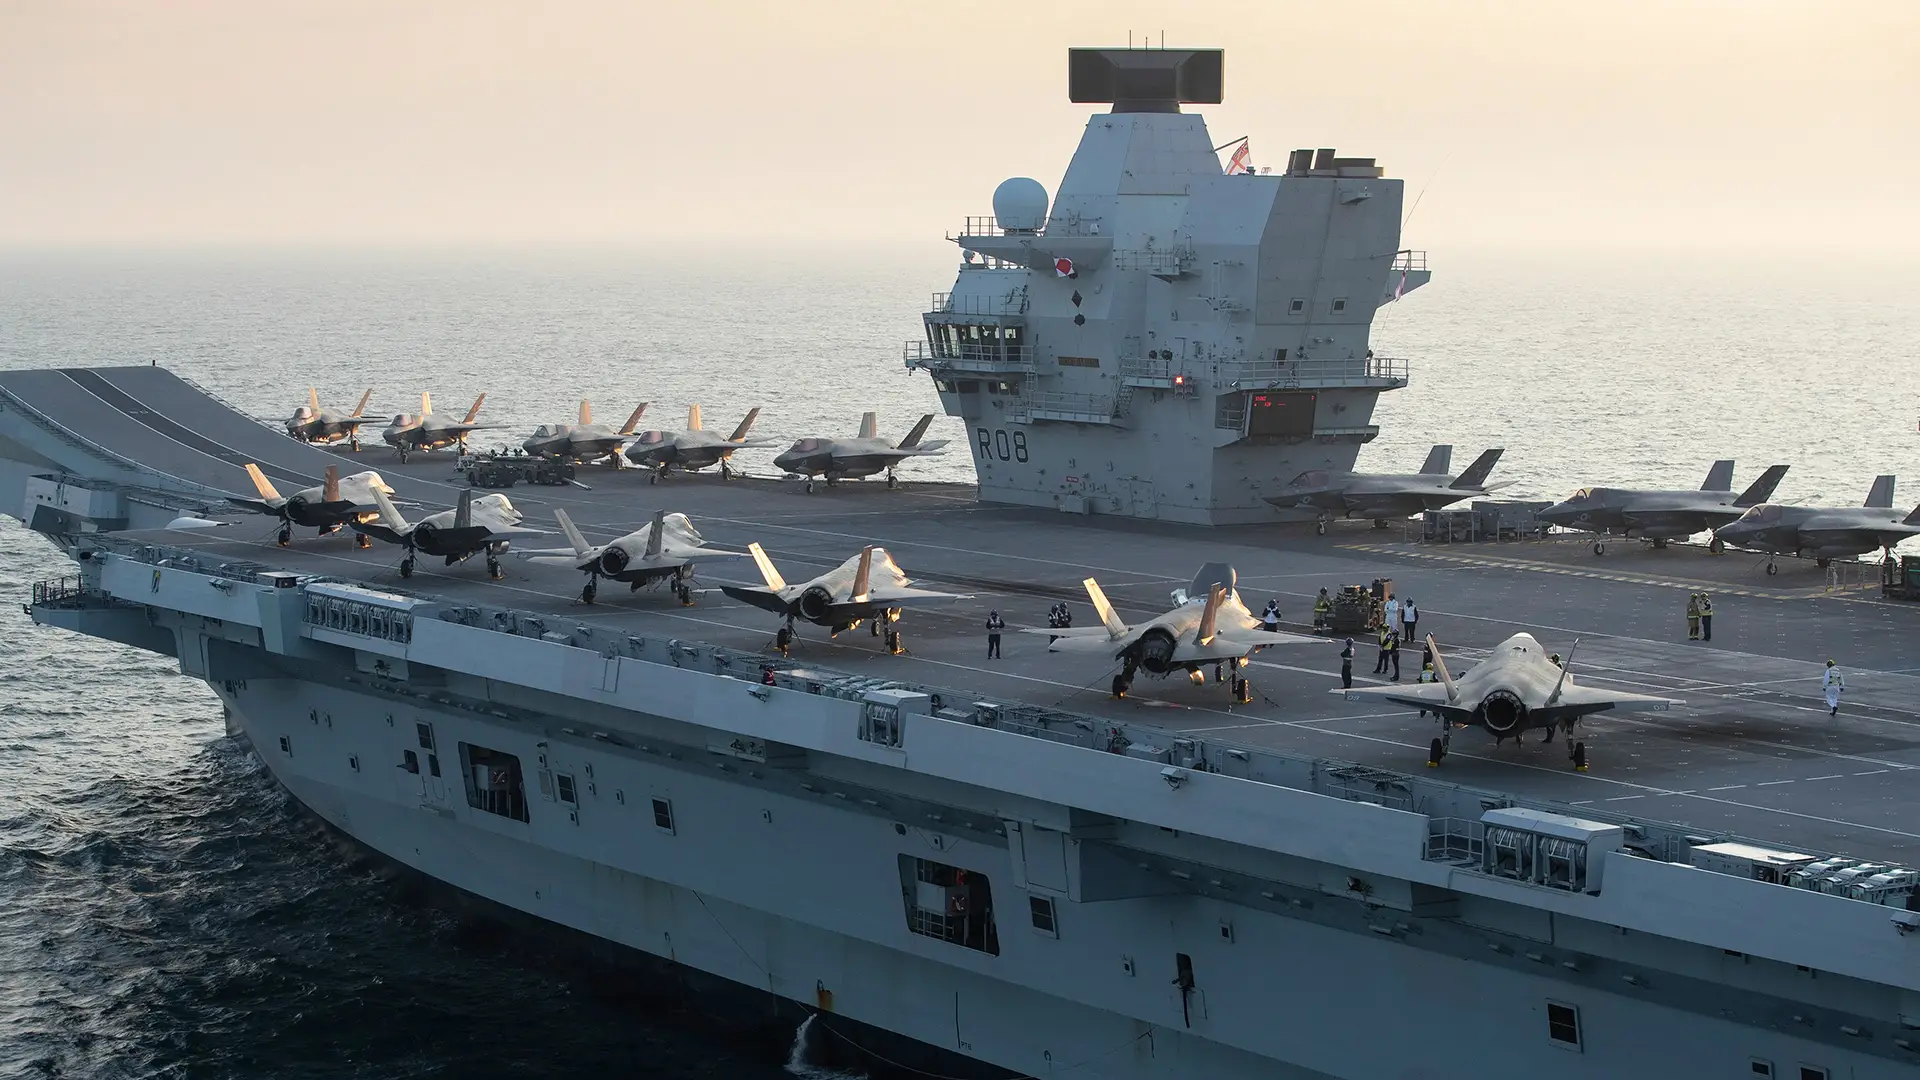 Royal Navy vill utrusta hangarfartyget Queen Elizabeth med katapulter och drönare för luftmålning